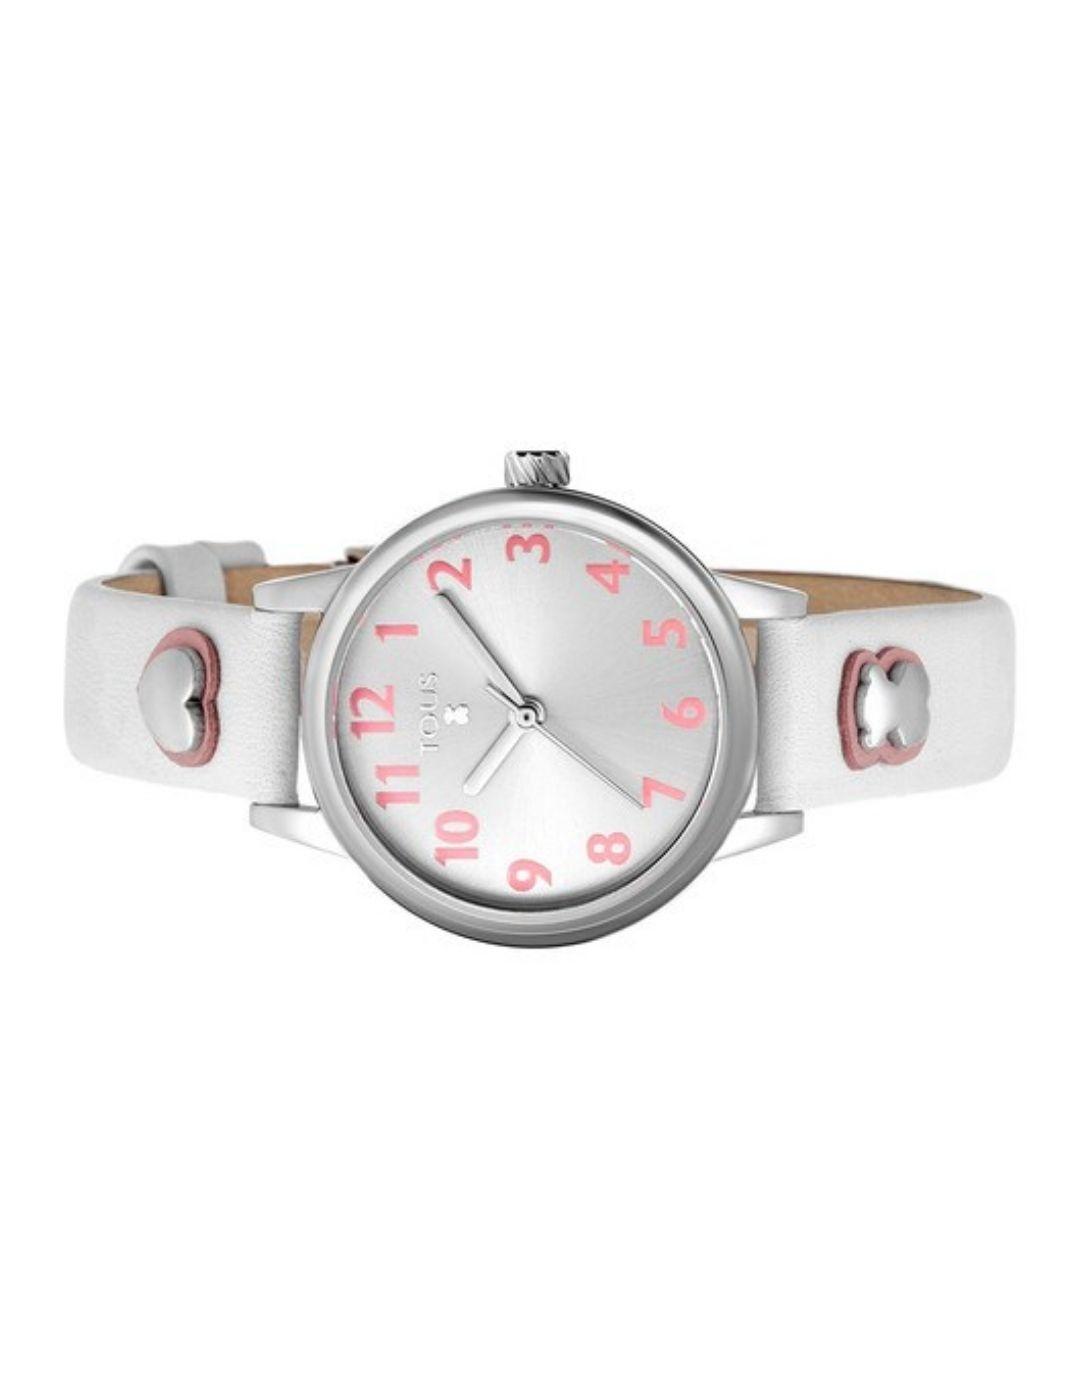 Reloj Dreamy de acero con correa de piel blanca